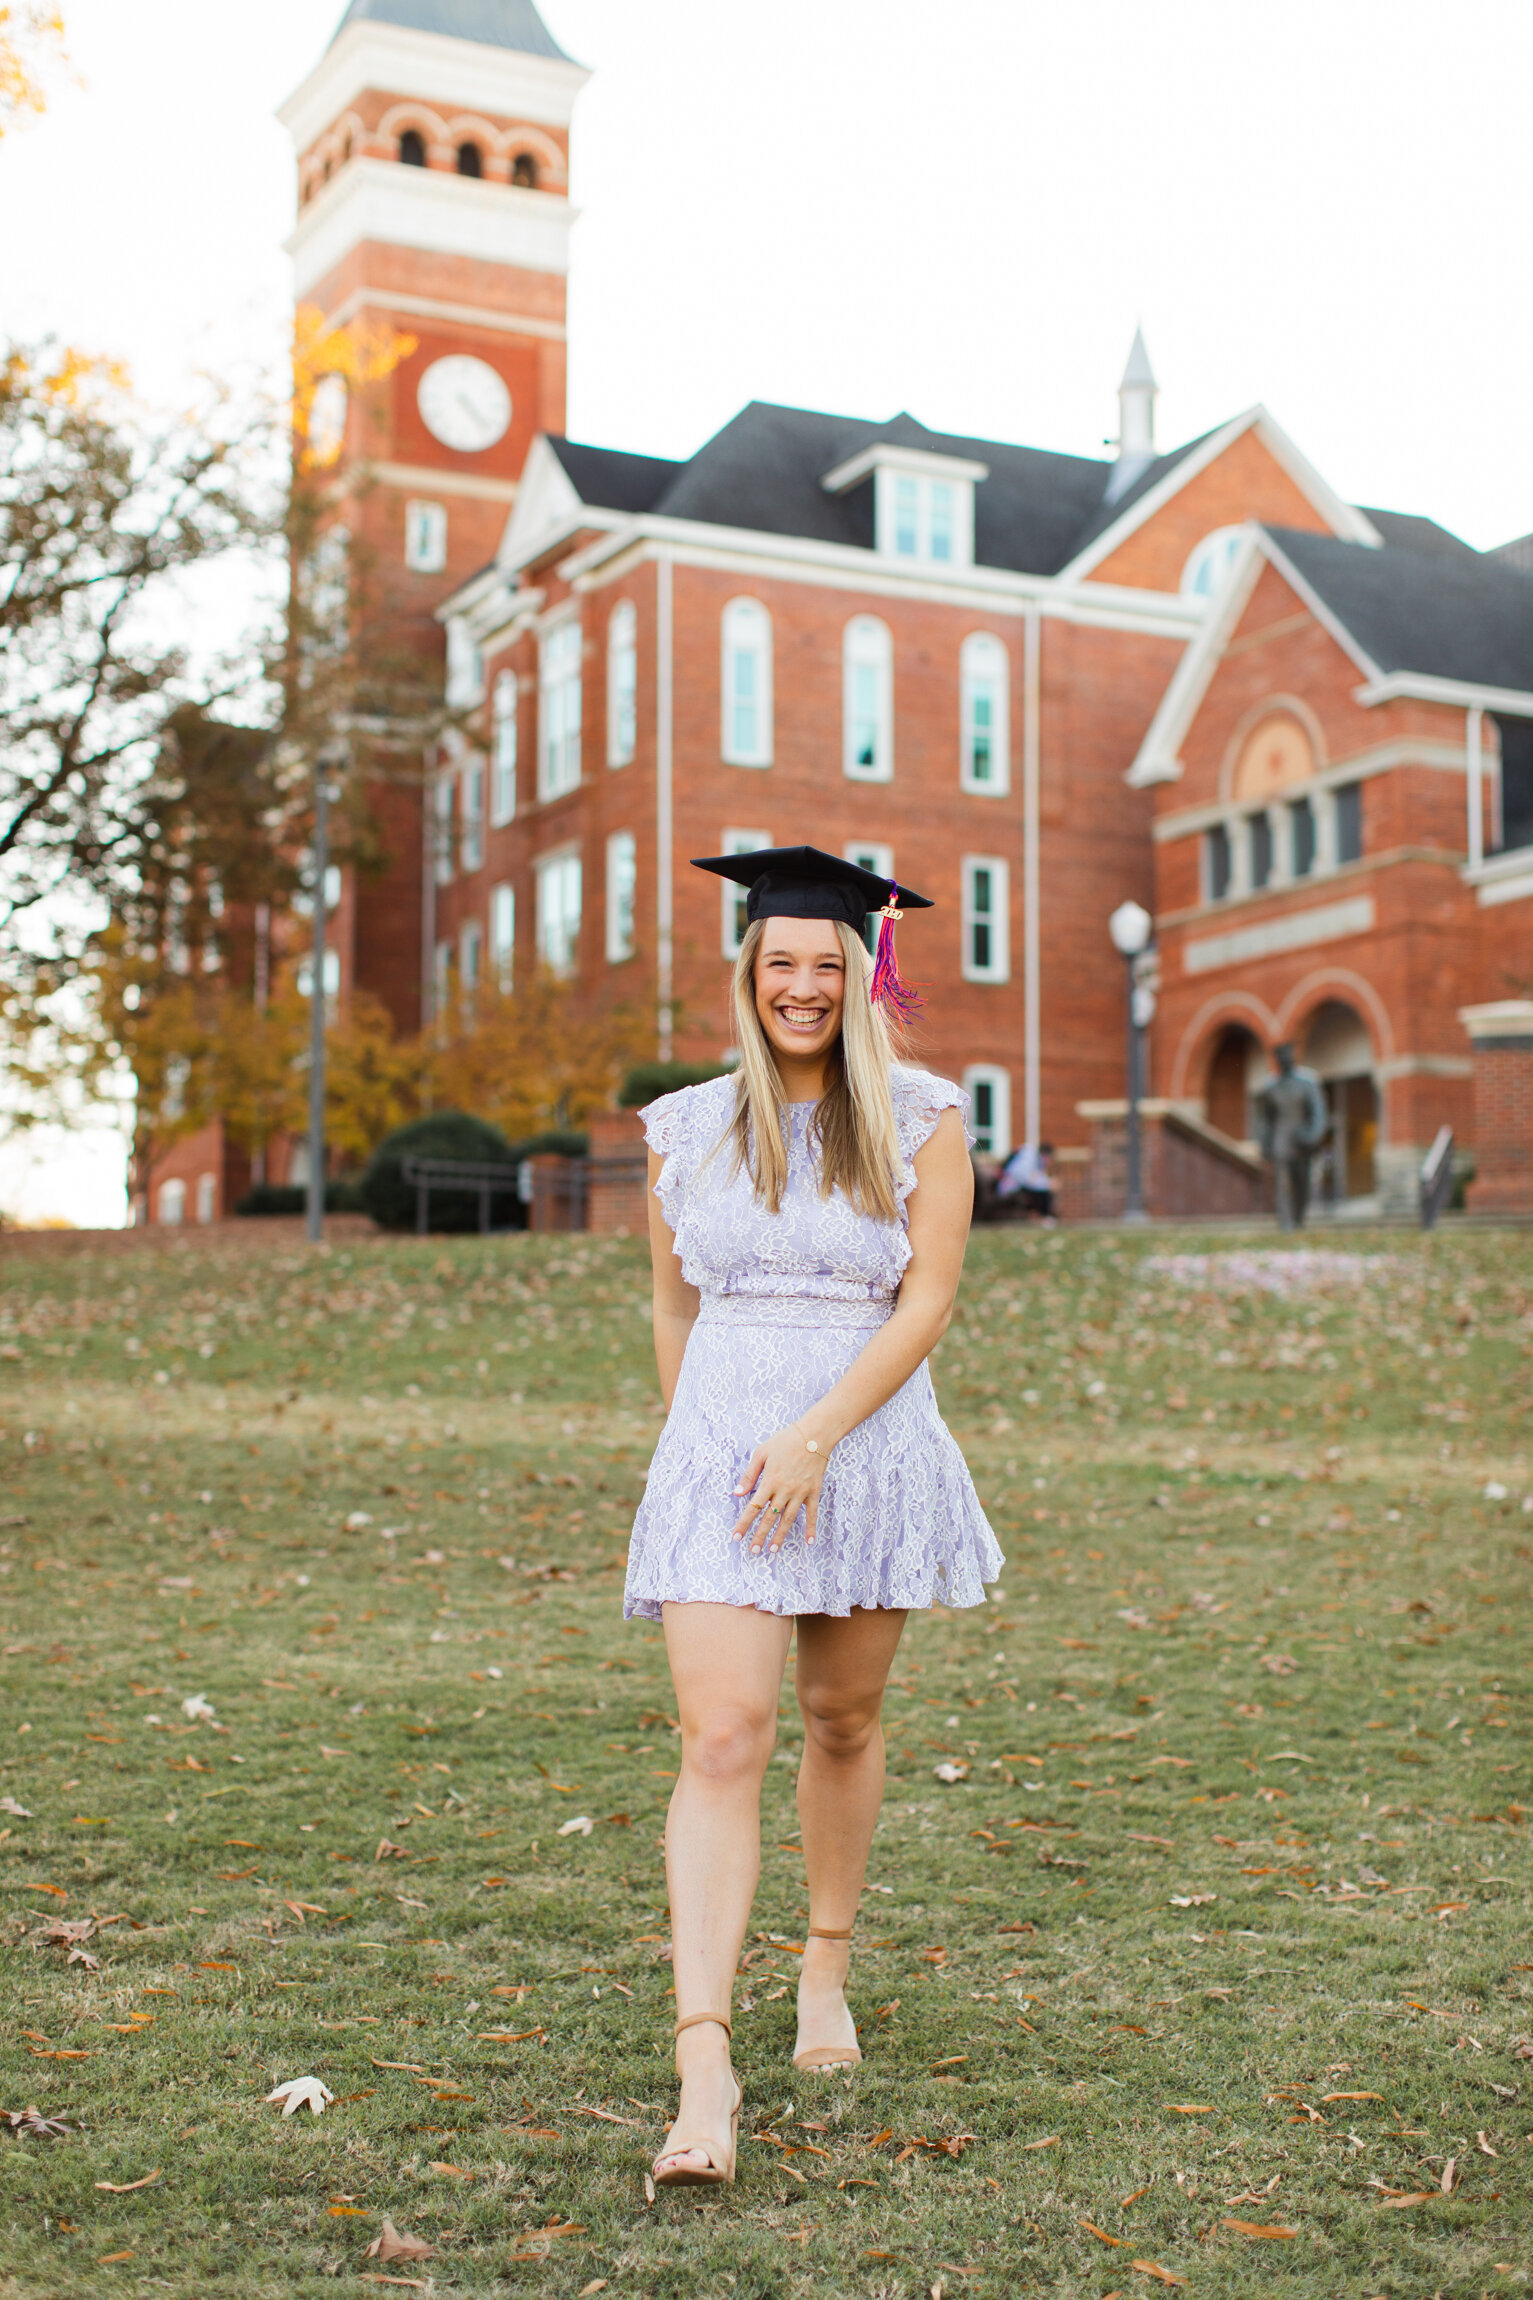 Tori_Clemson Graduation Photos_Images-6011.jpg